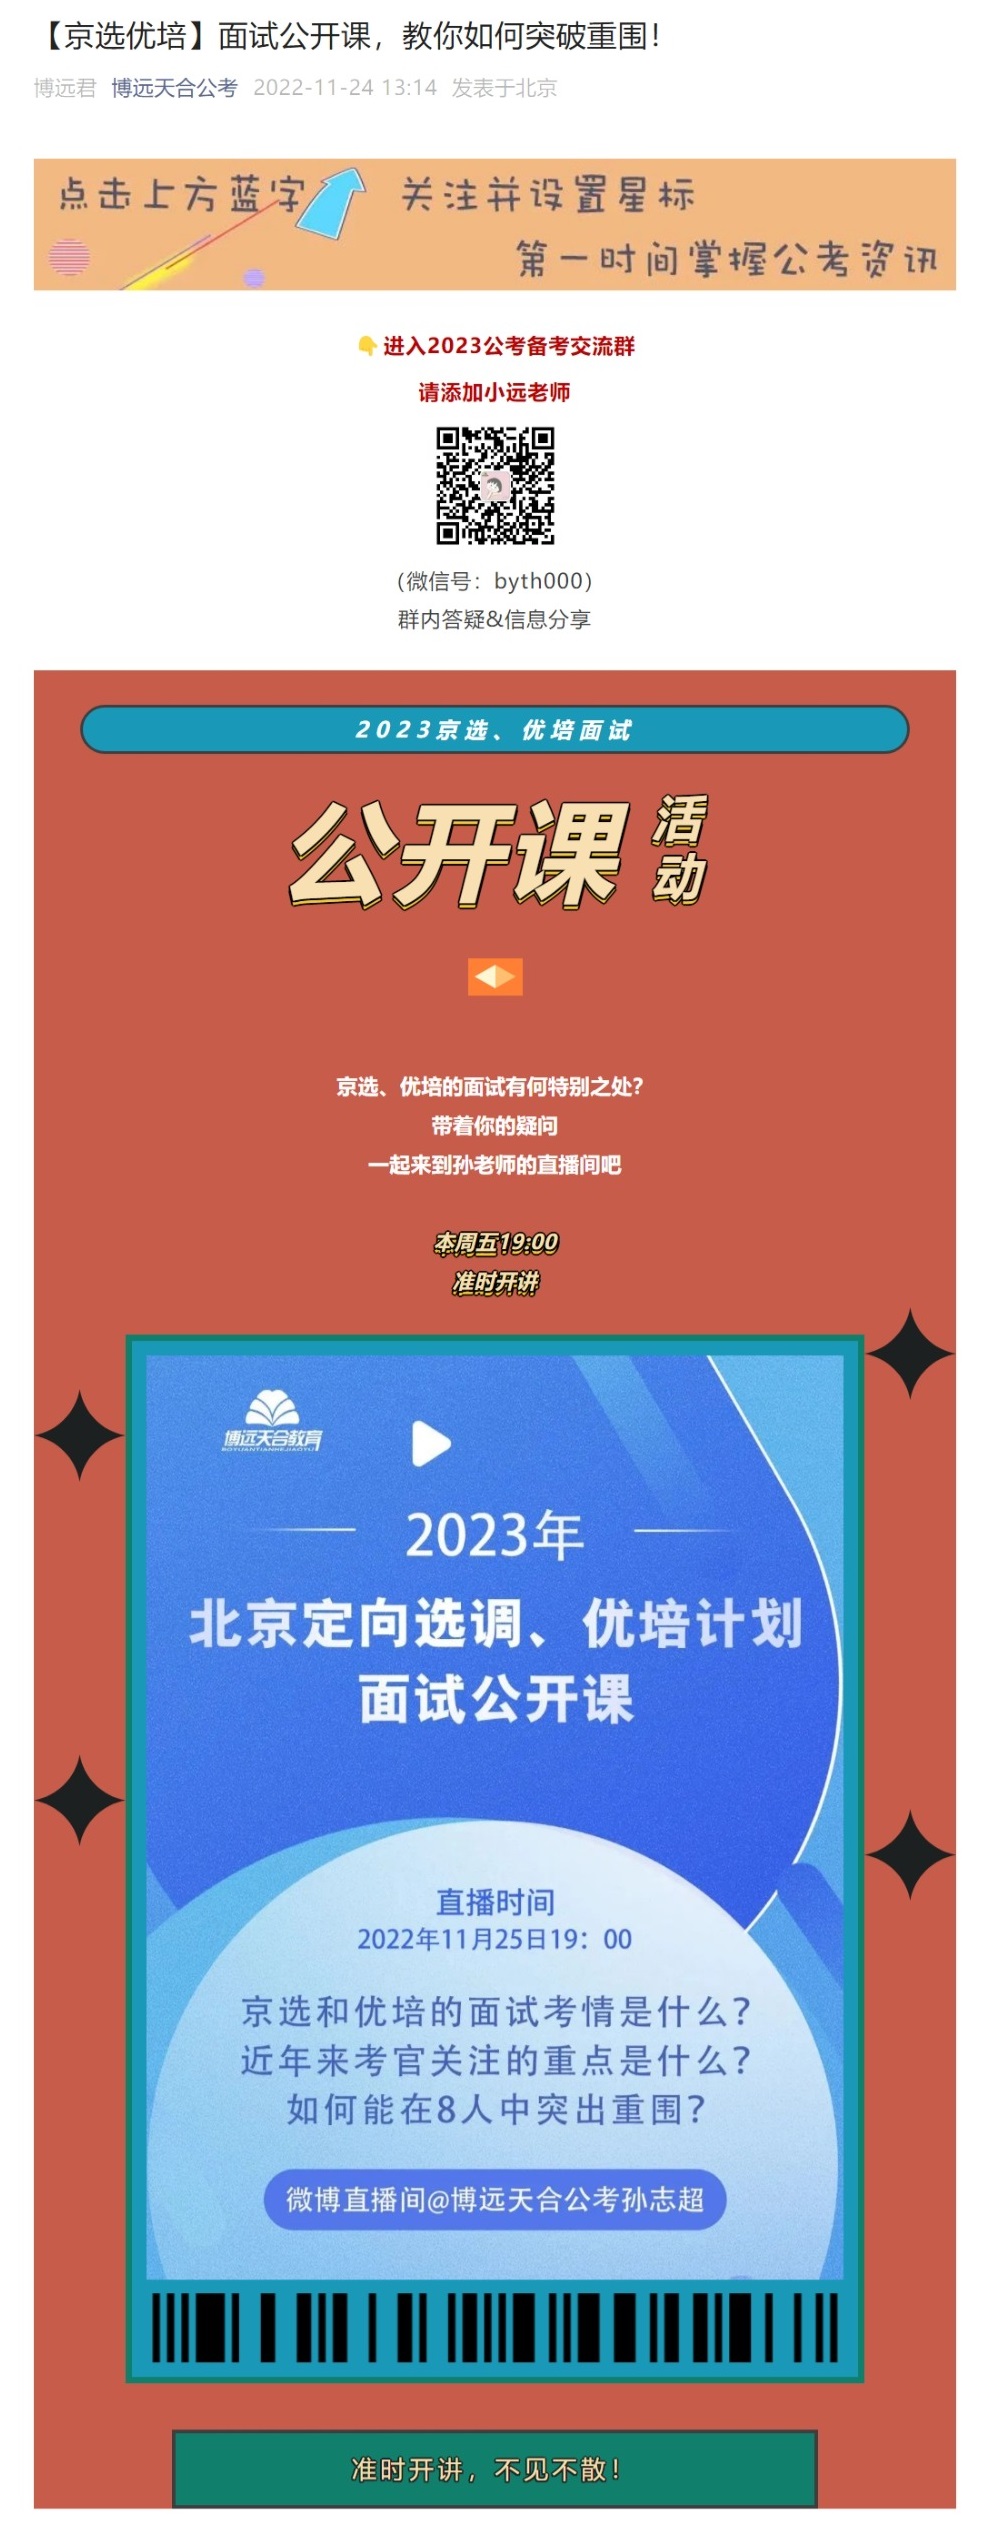 网页捕获_24-11-2022_212643_mp.weixin.qq.com.jpeg